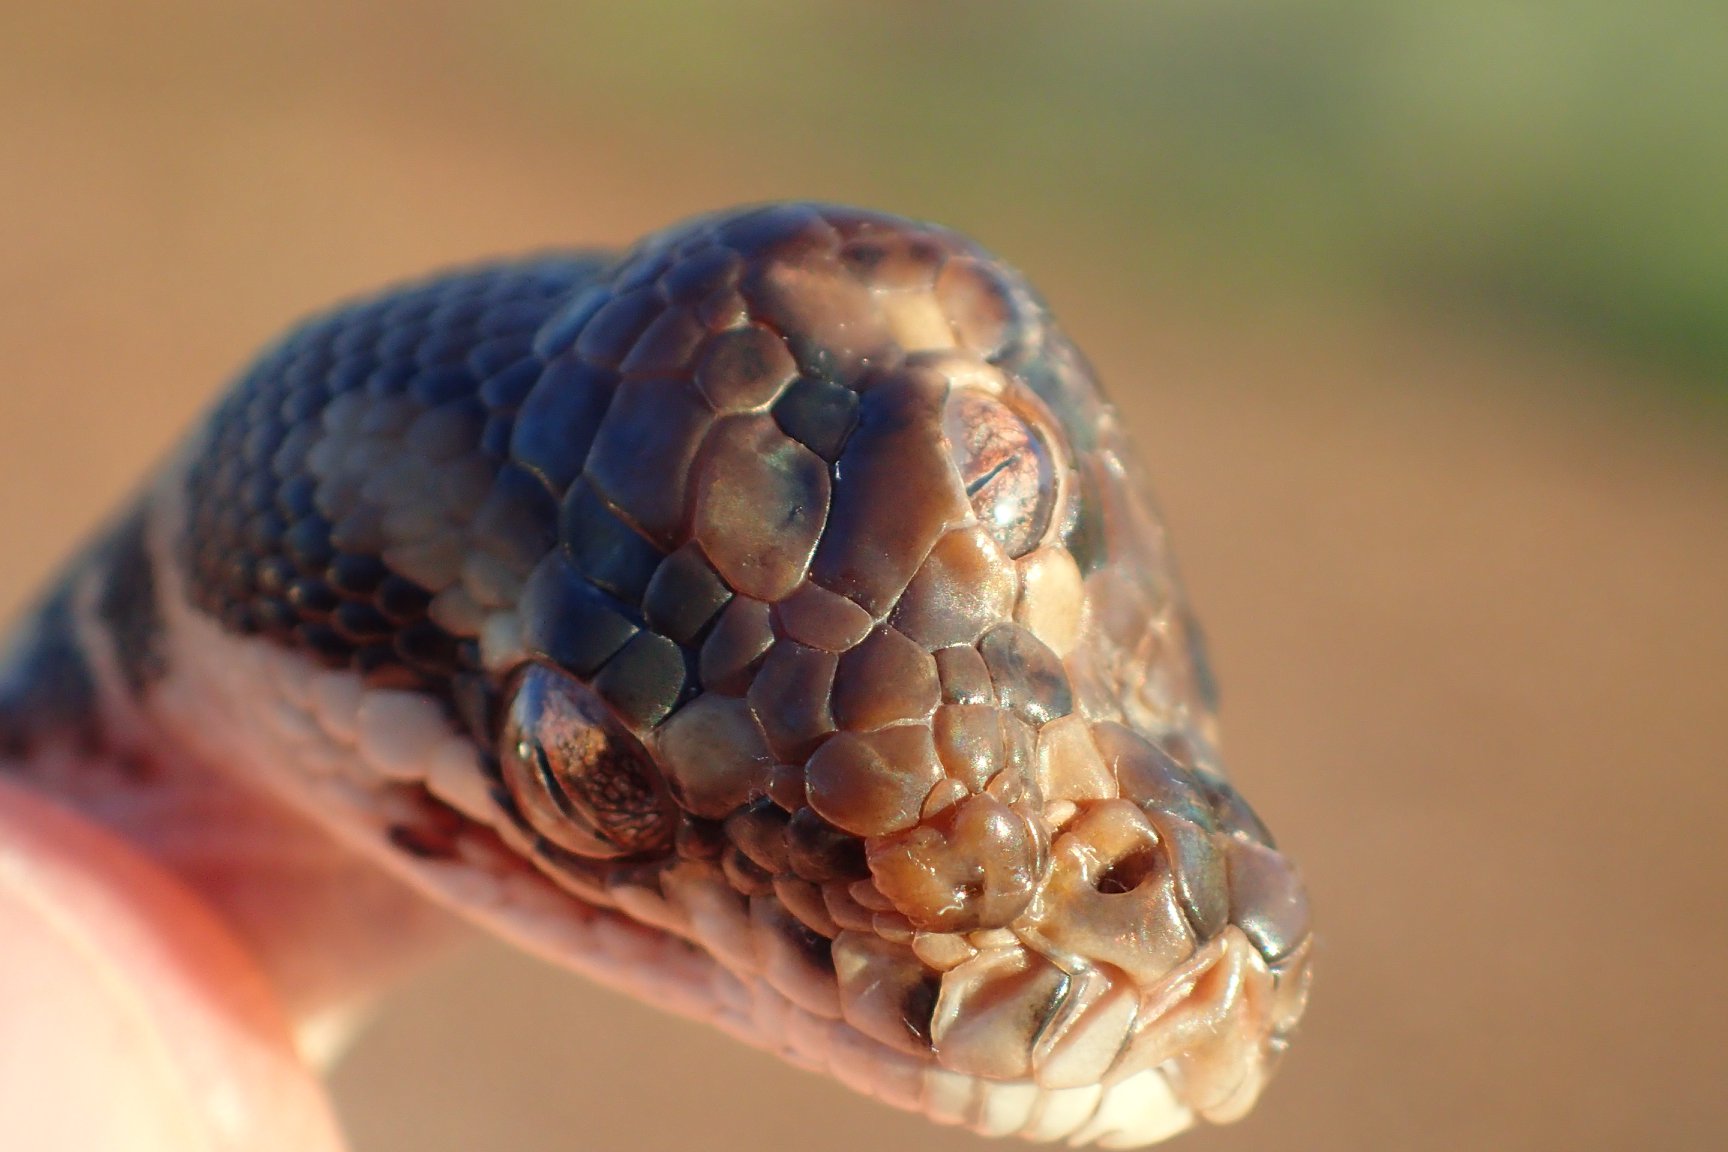 A three-eyed snake found near Darwin